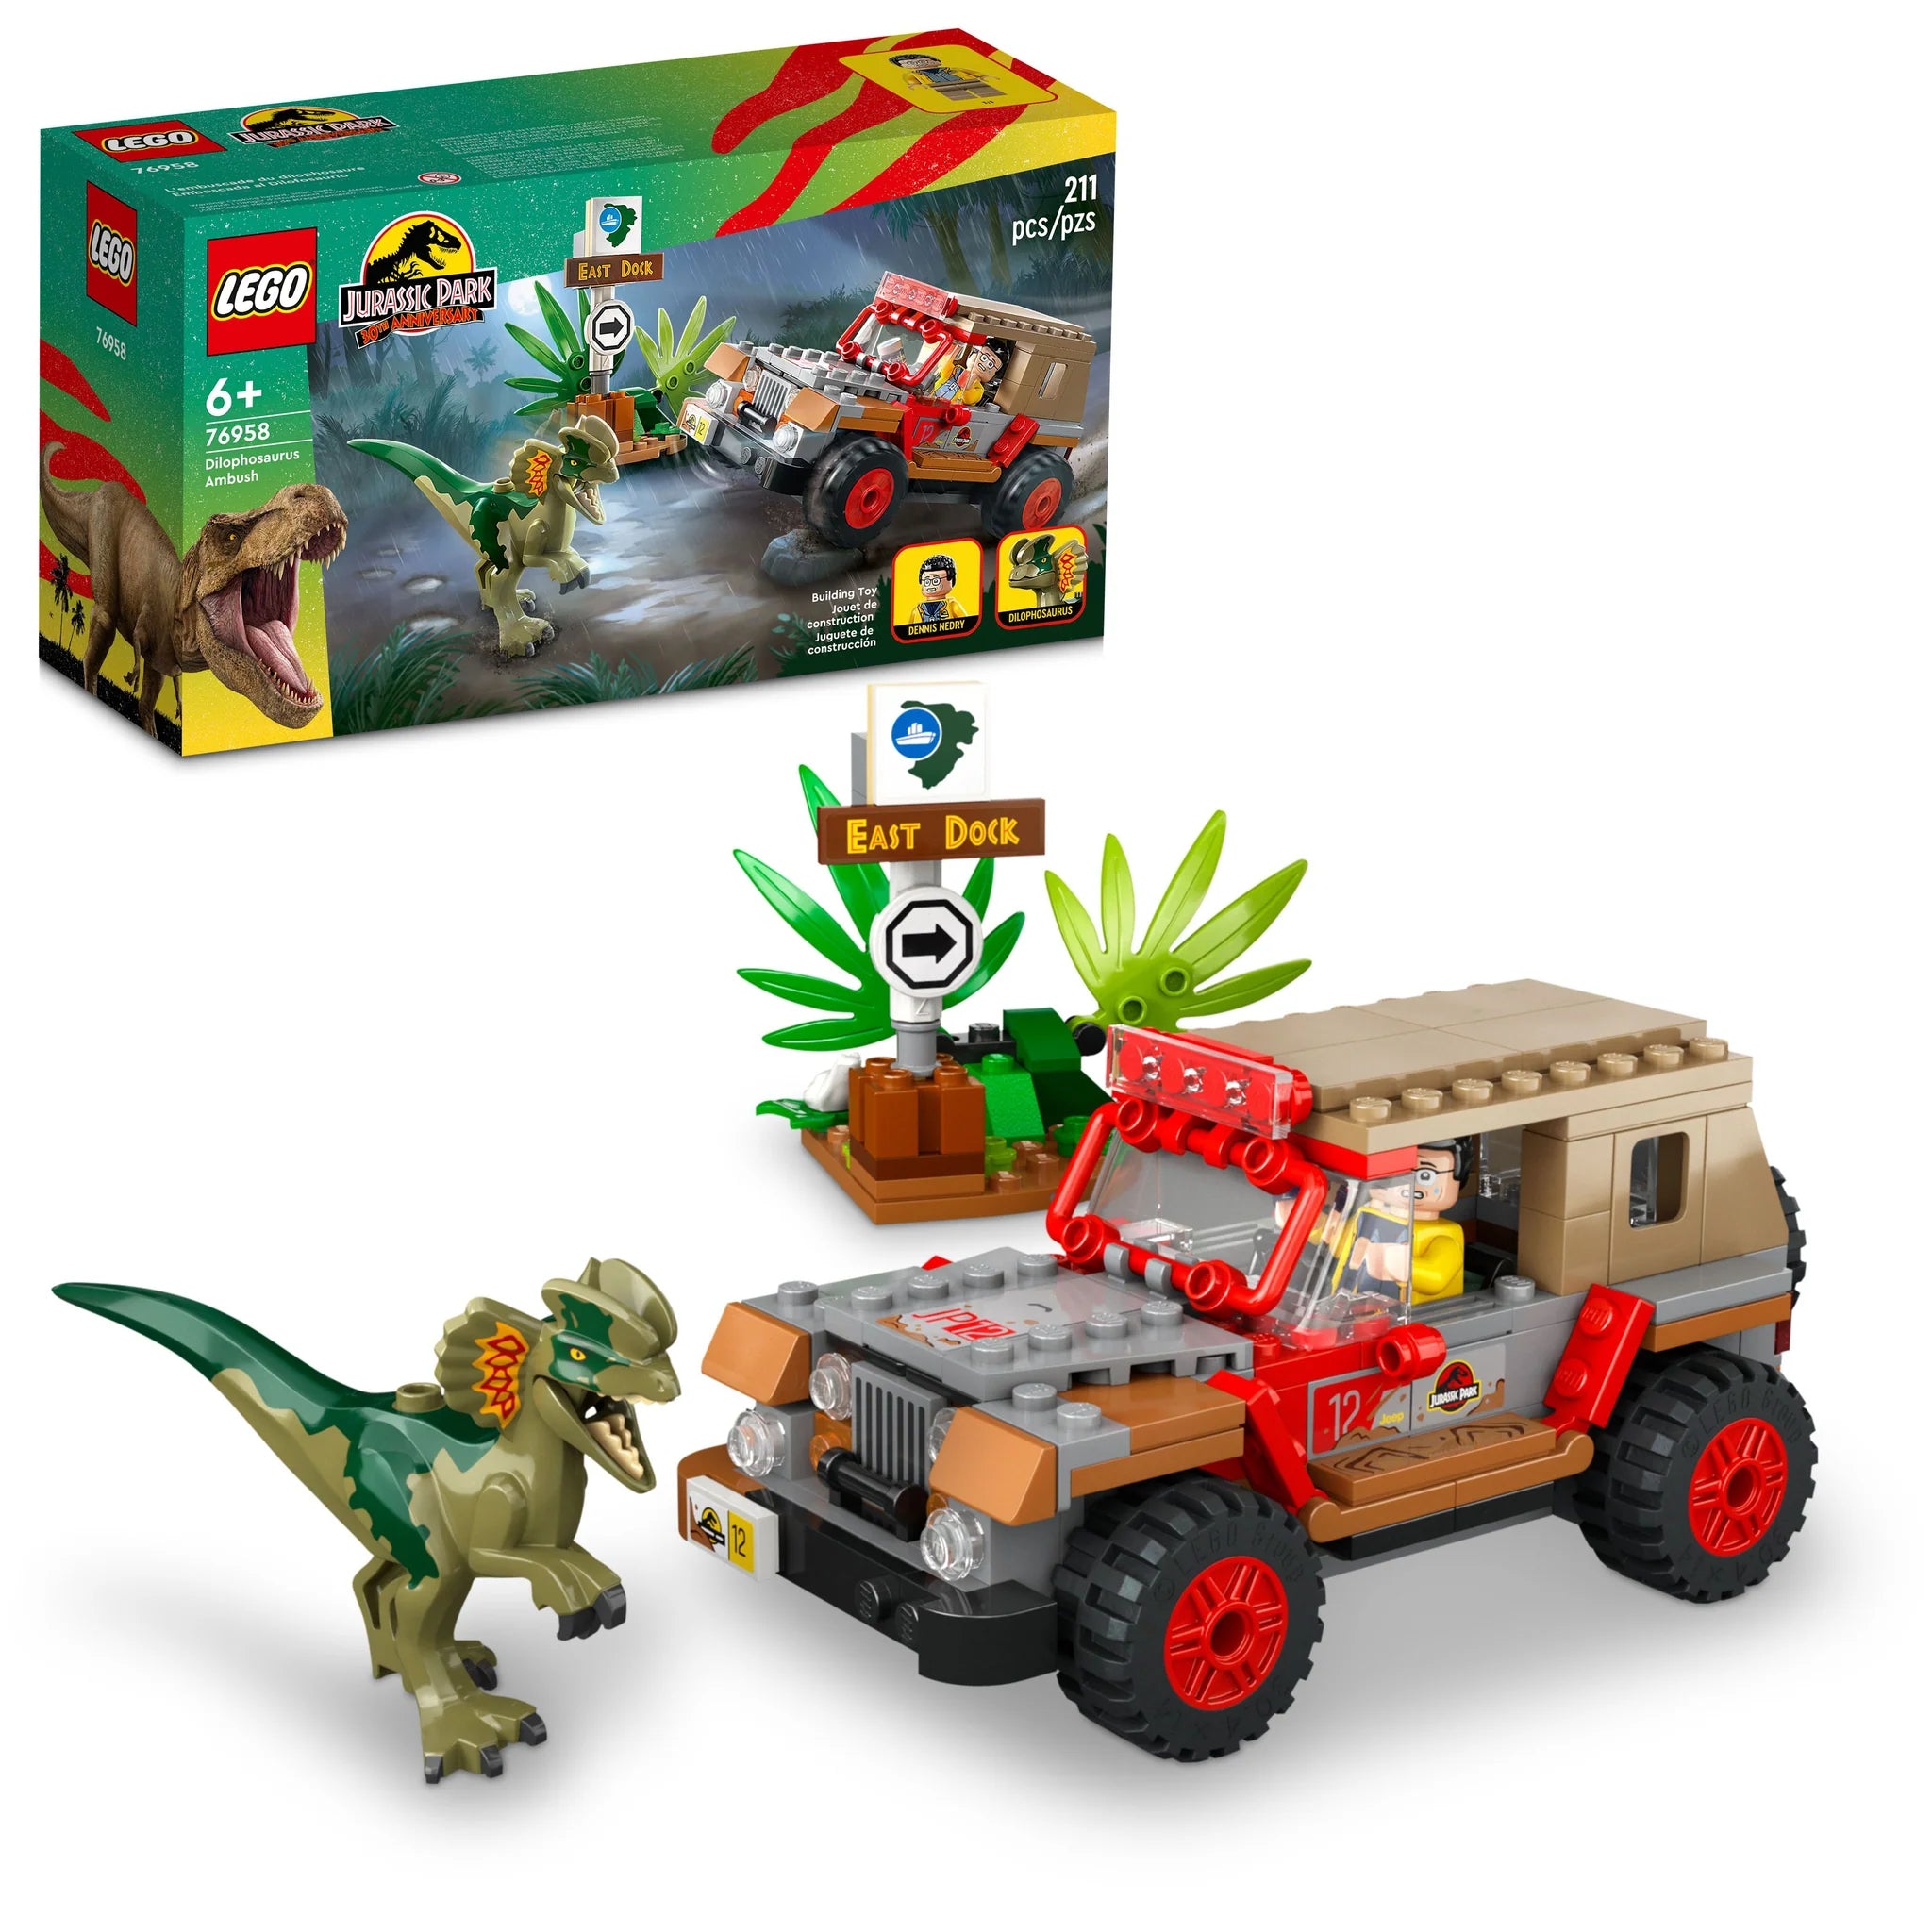 LEGO® Jurassic Park Dilophosaurus Ambush 76958 Building Toy Set (211 Pieces)